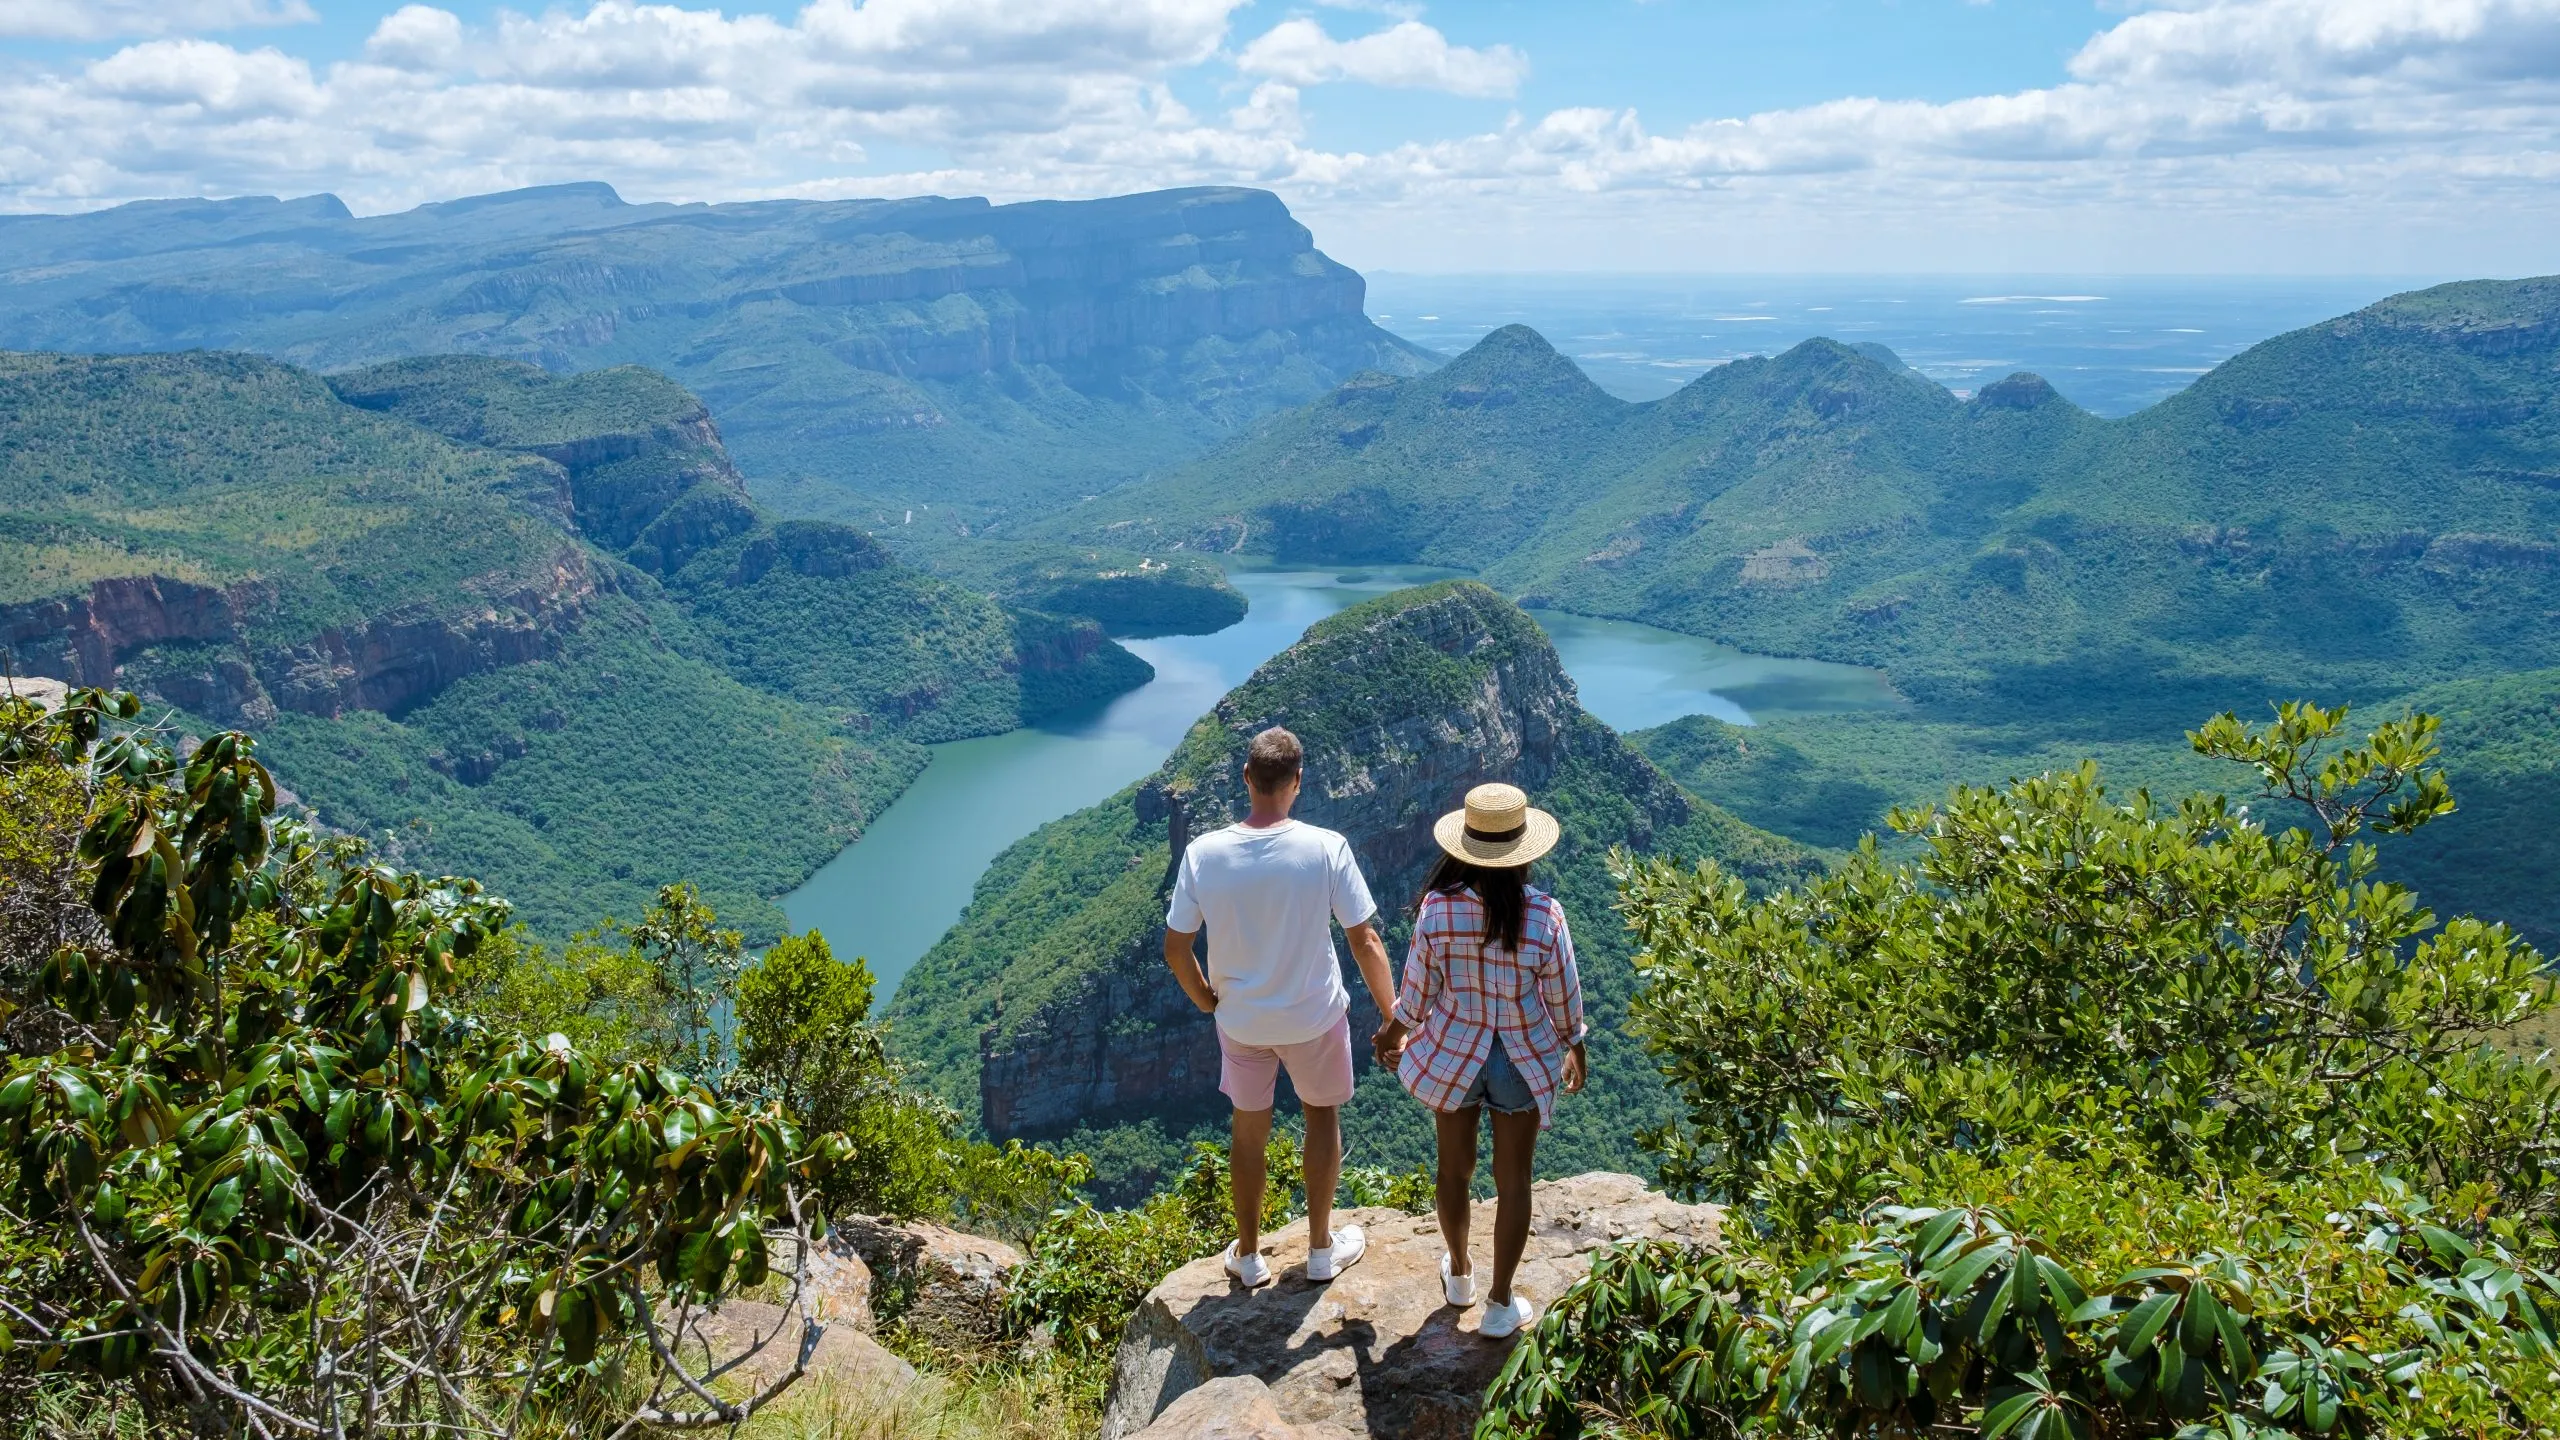 Panorama Route África do Sul, desfiladeiro do rio Blyde com os três rondavels, vista de três rondavels e do desfiladeiro do rio Blyde na África do Sul. Mulheres asiáticas e homens caucasianos em férias na África do Sul